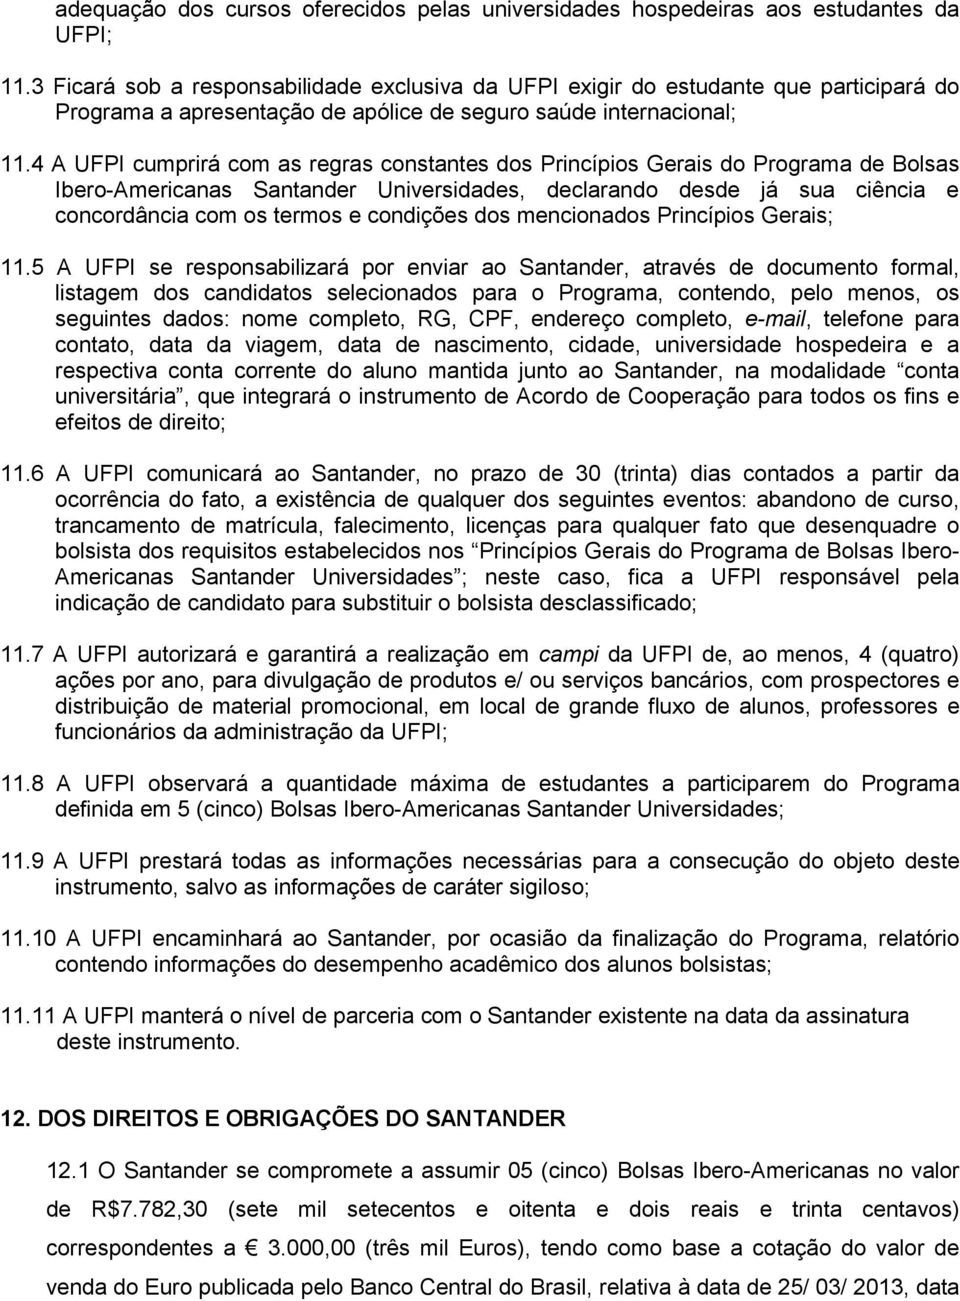 4 A UFPI cumprirá com as regras constantes dos Princípios Gerais do Programa de Bolsas Ibero-Americanas Santander Universidades, declarando desde já sua ciência e concordância com os termos e